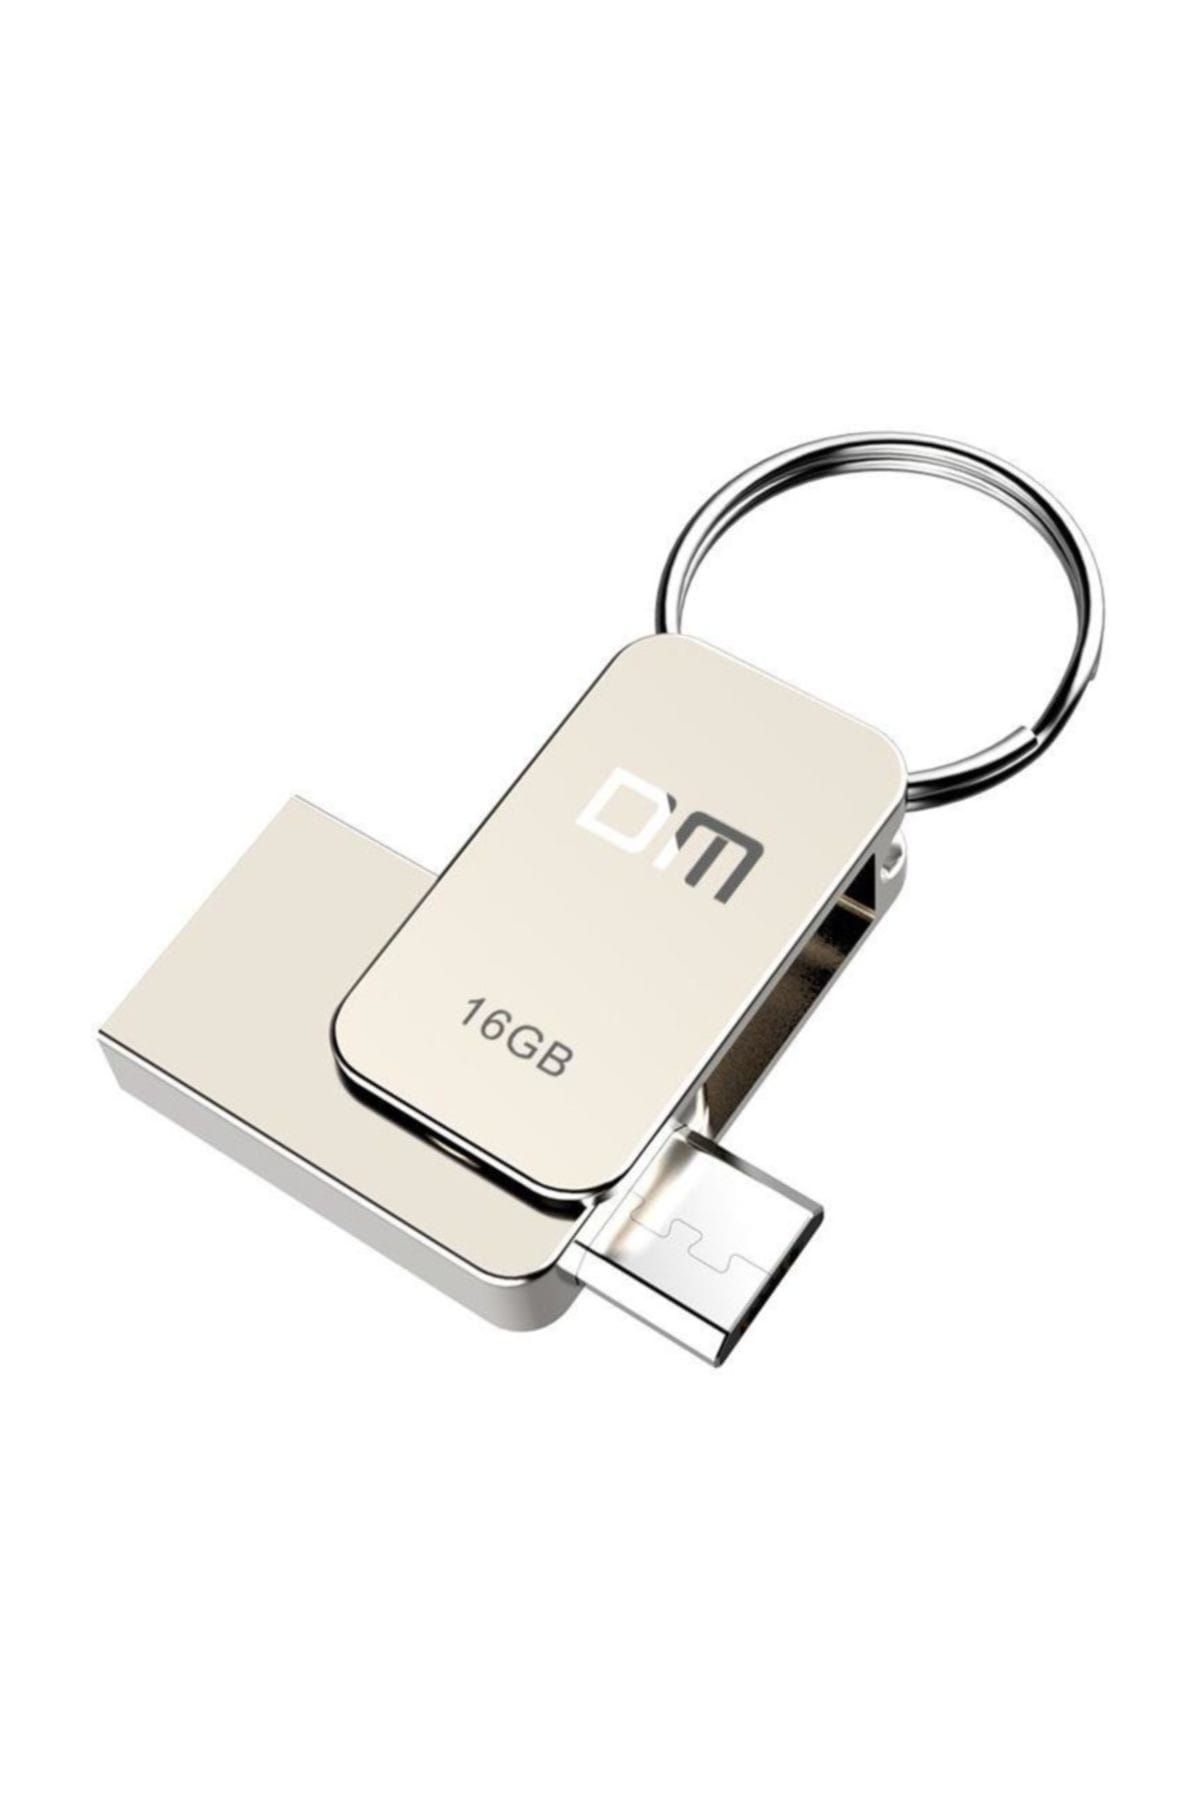 DM Micro USB OTG 8GB USB Flash Bellek